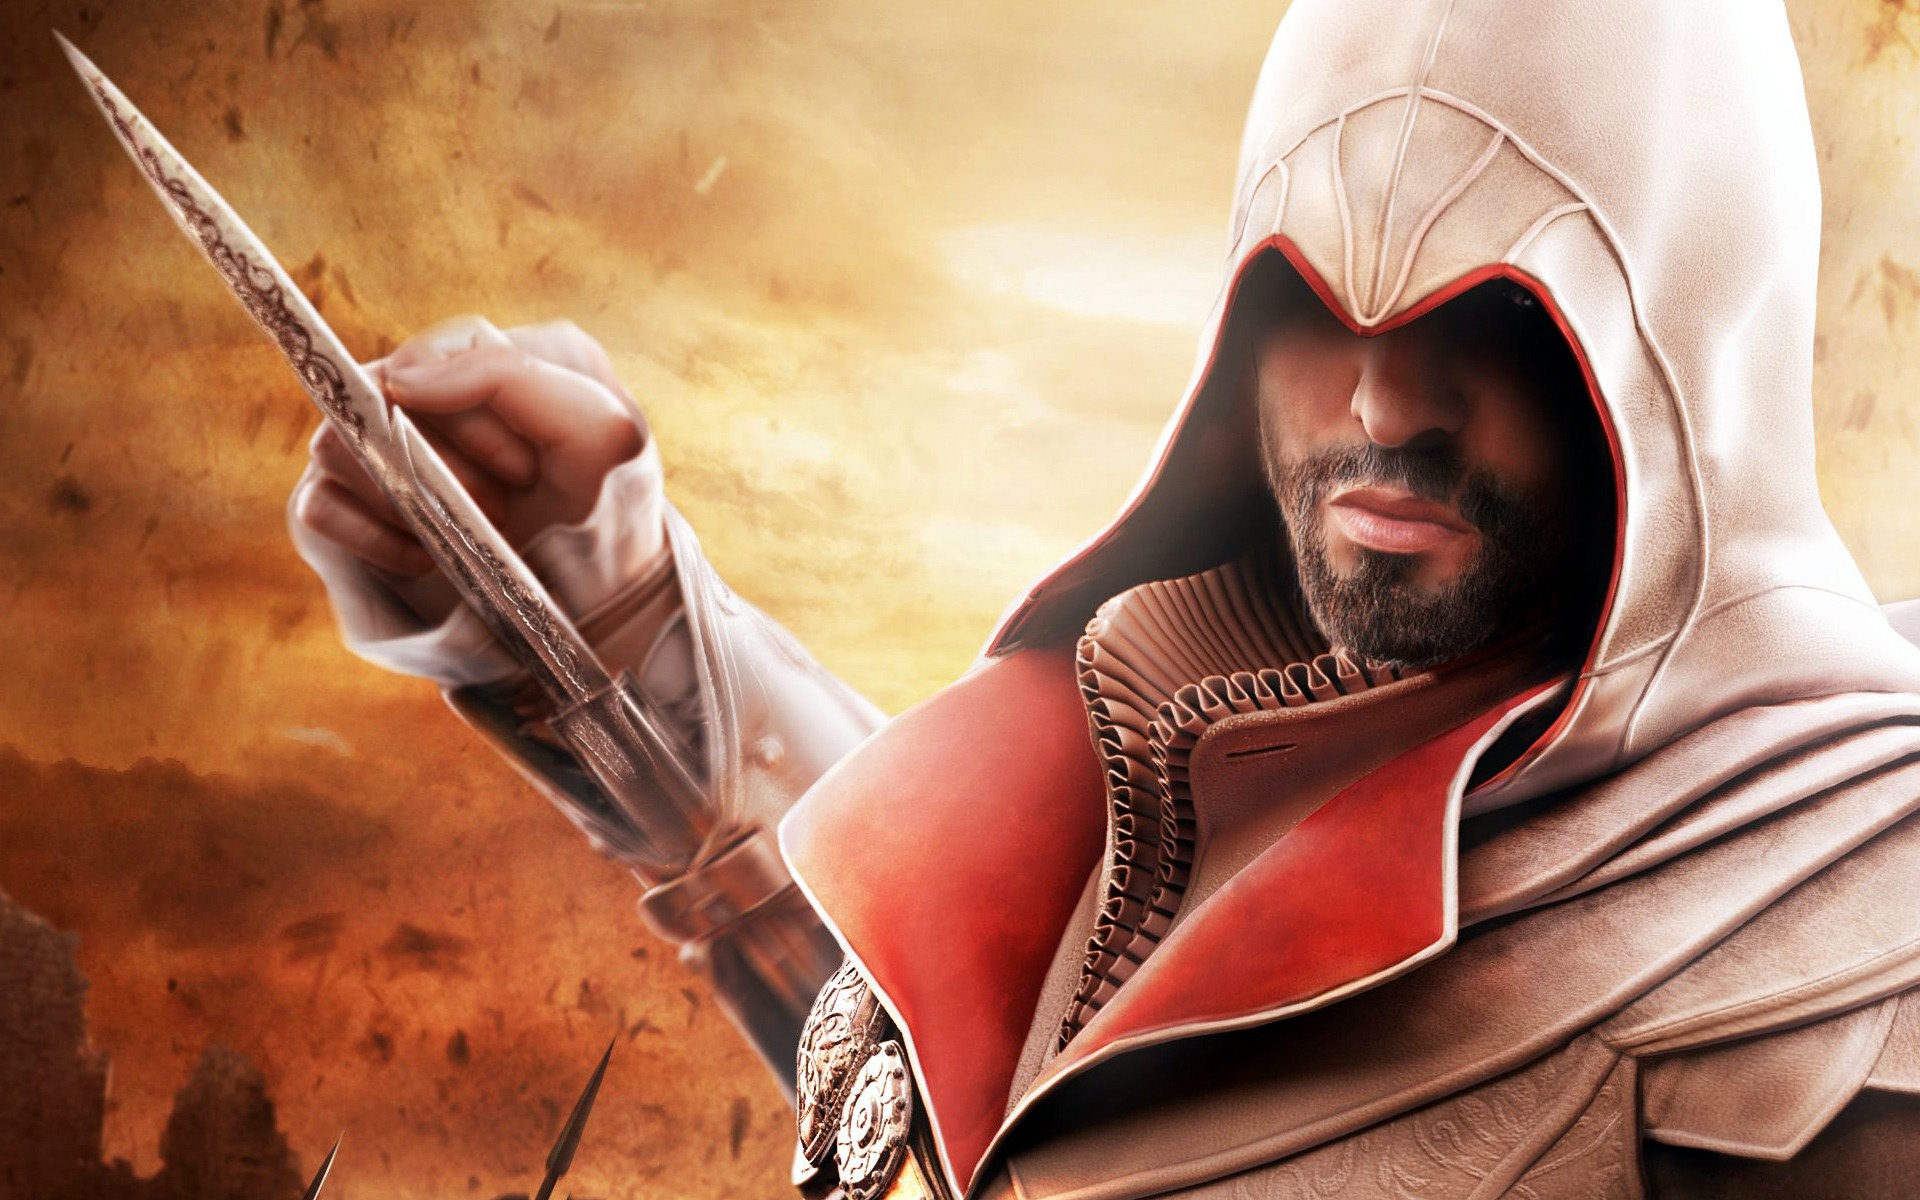 Assassins Creed Brotherhood #4174448, 2560x1600 | All For Desktop